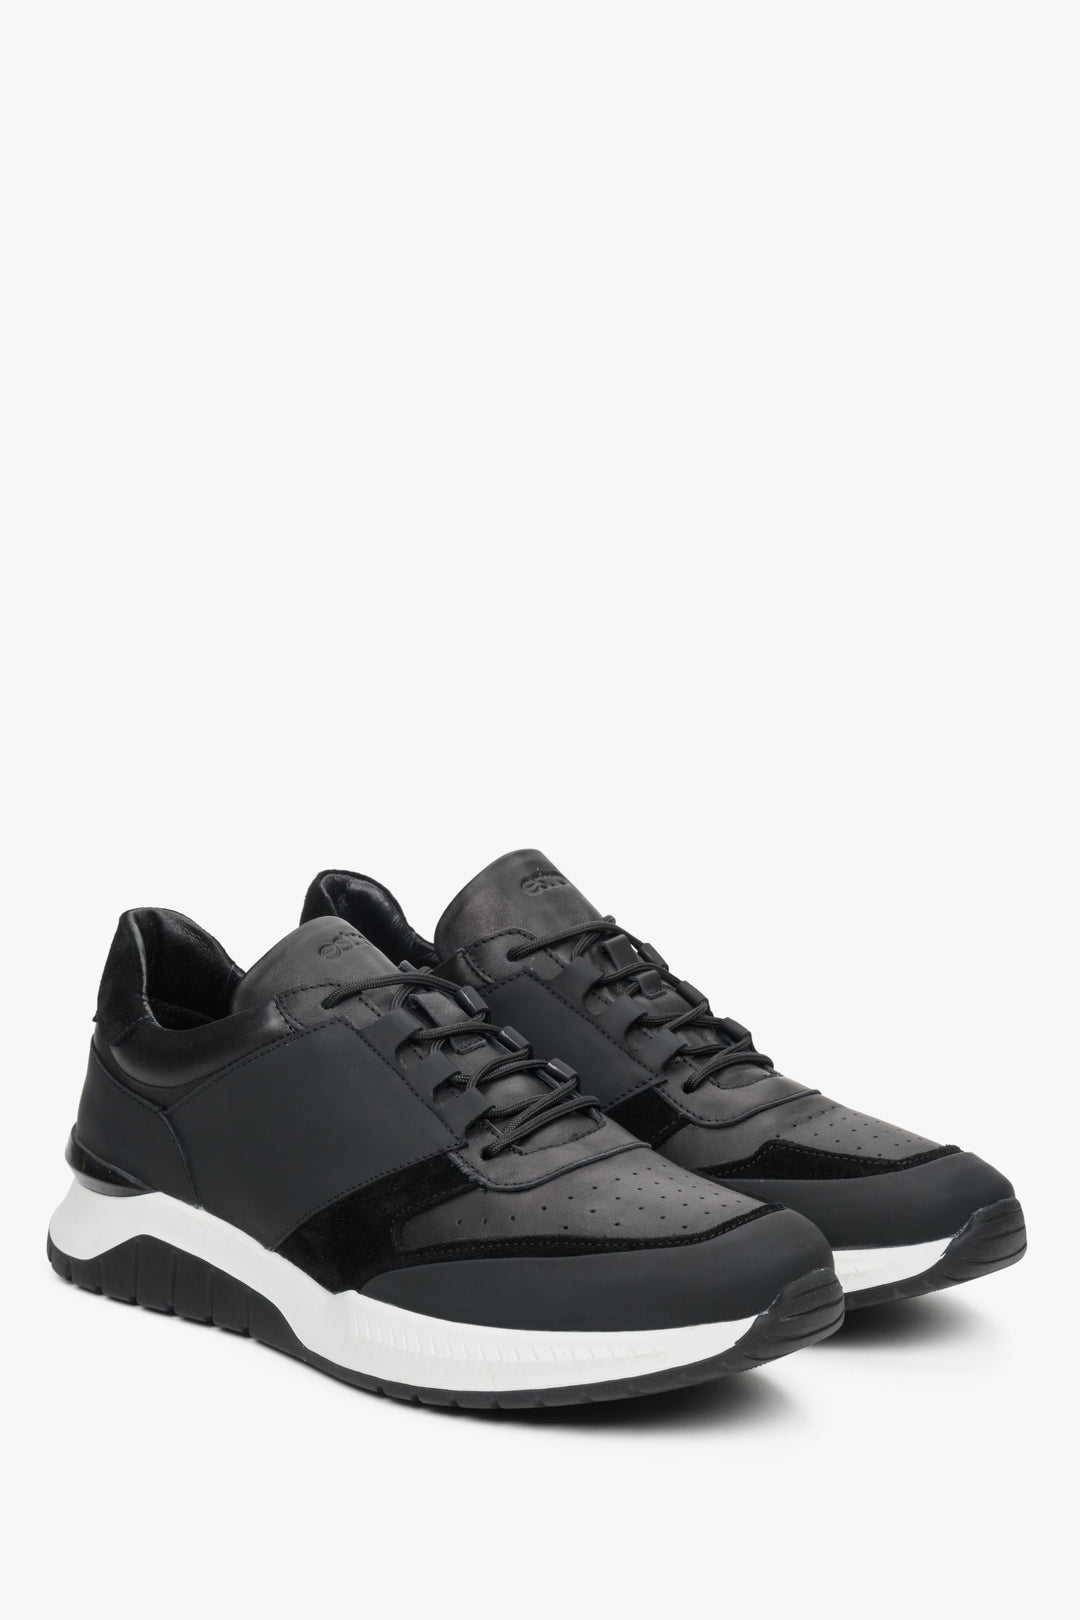 Męskie sneakersy w kolorze czarno-białym marki Estro - pogląd przodu i bocznej przyszwy buta.